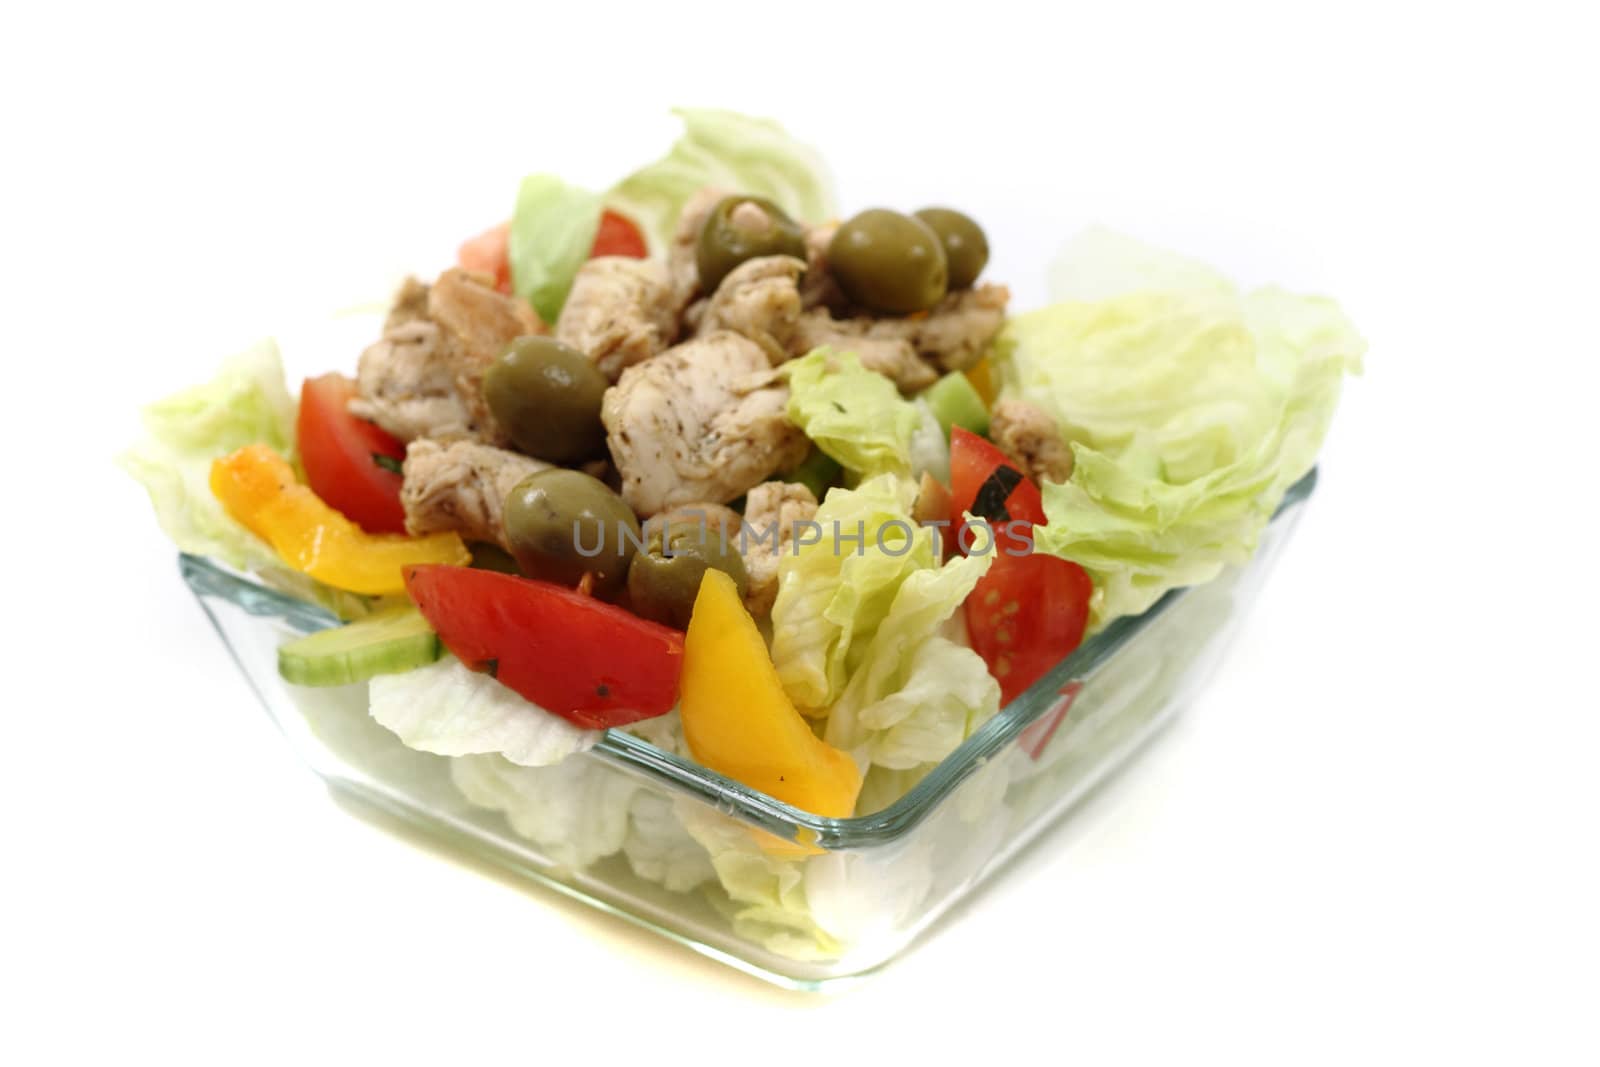 diet chicken and vegetable food by jonnysek